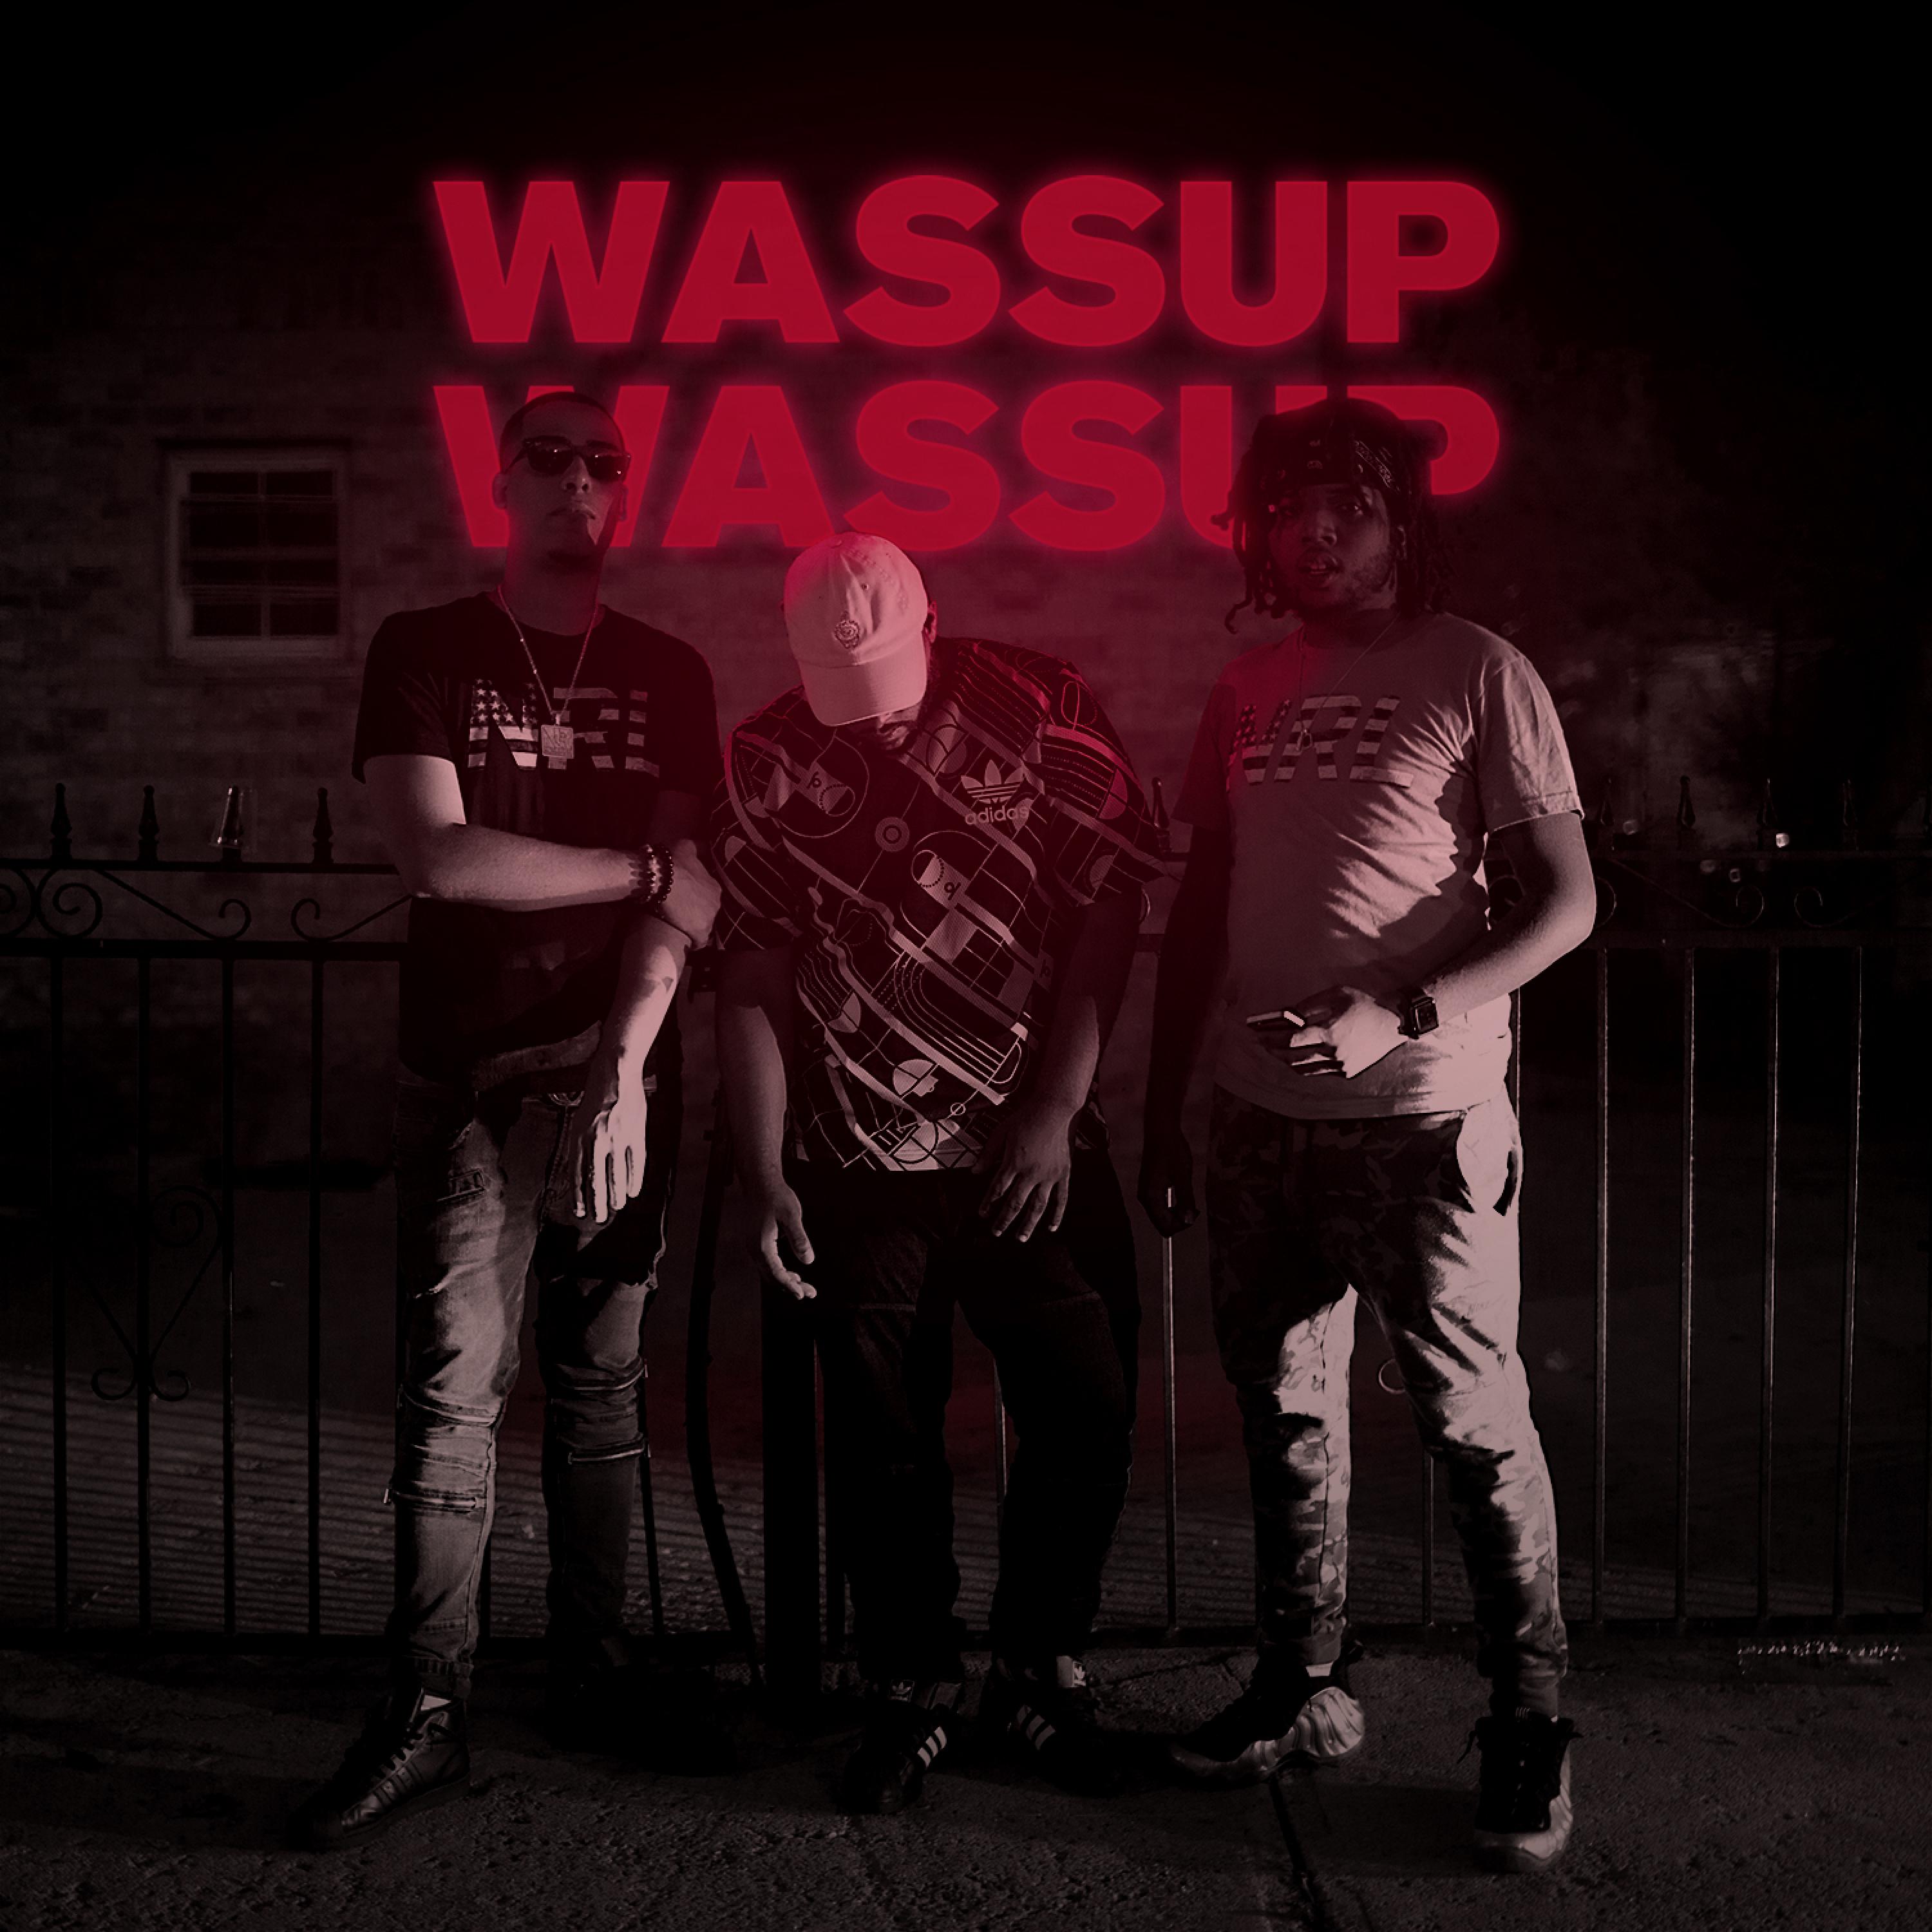 Wassup, Wassup (feat. Willgz)